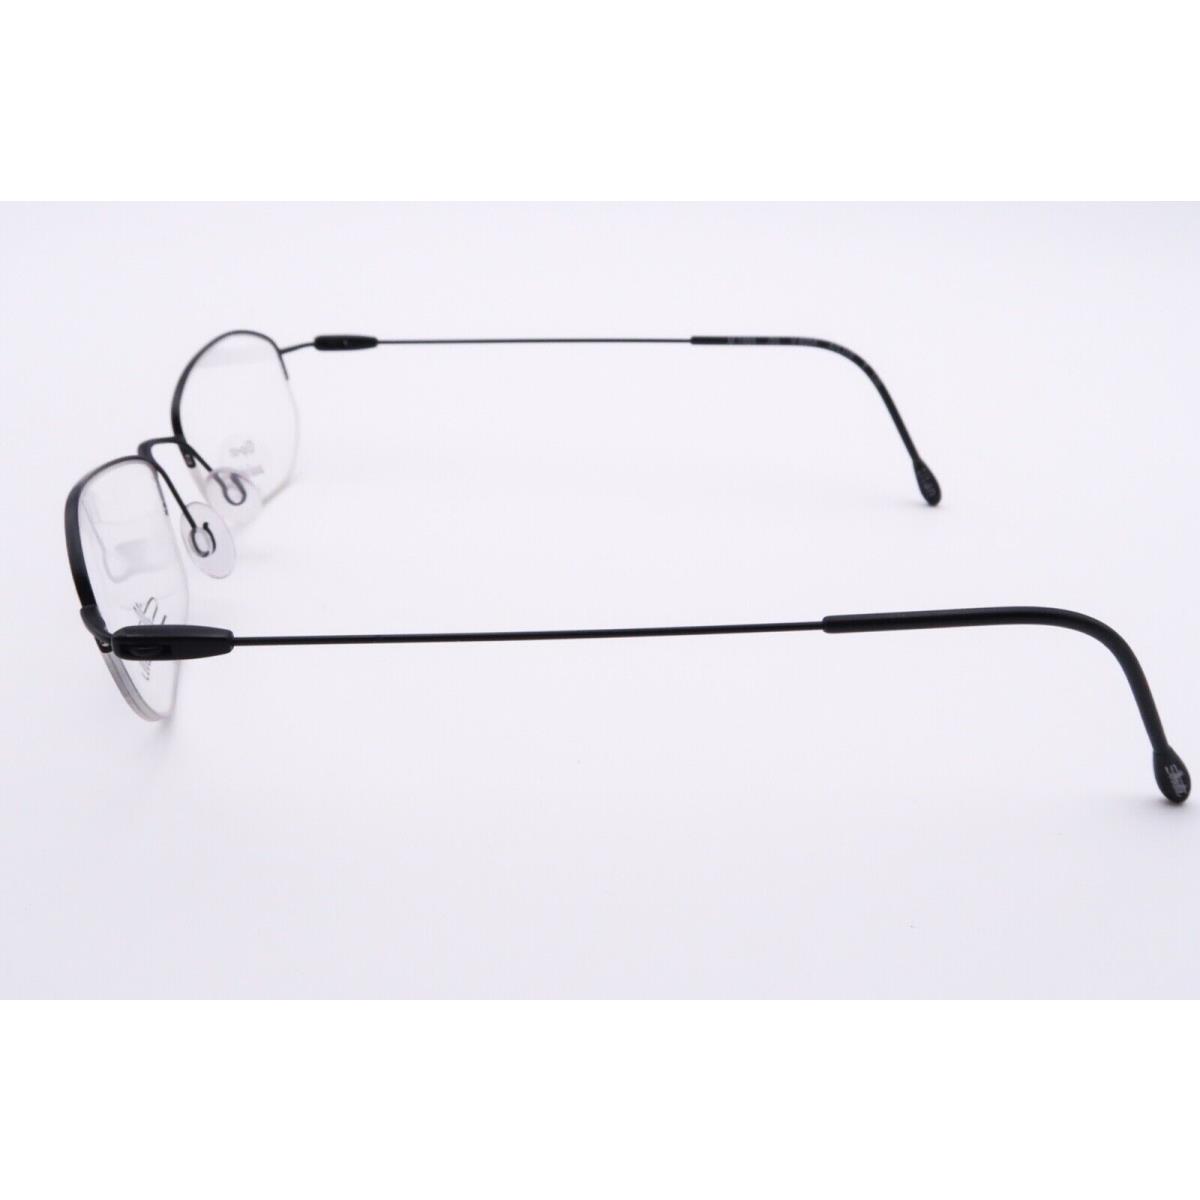 Silhouette eyeglasses  - Black Frame 1